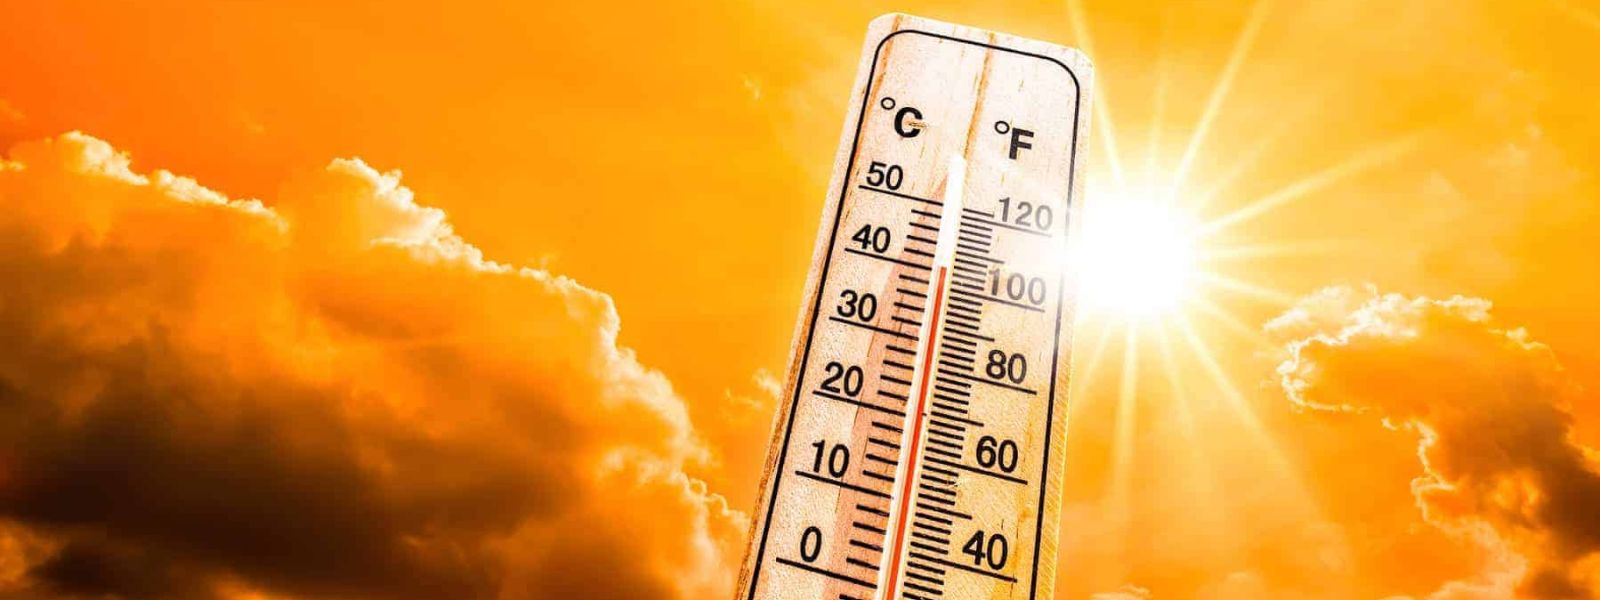 Heat Index Alert: ‘Caution Level’ Expected in SL